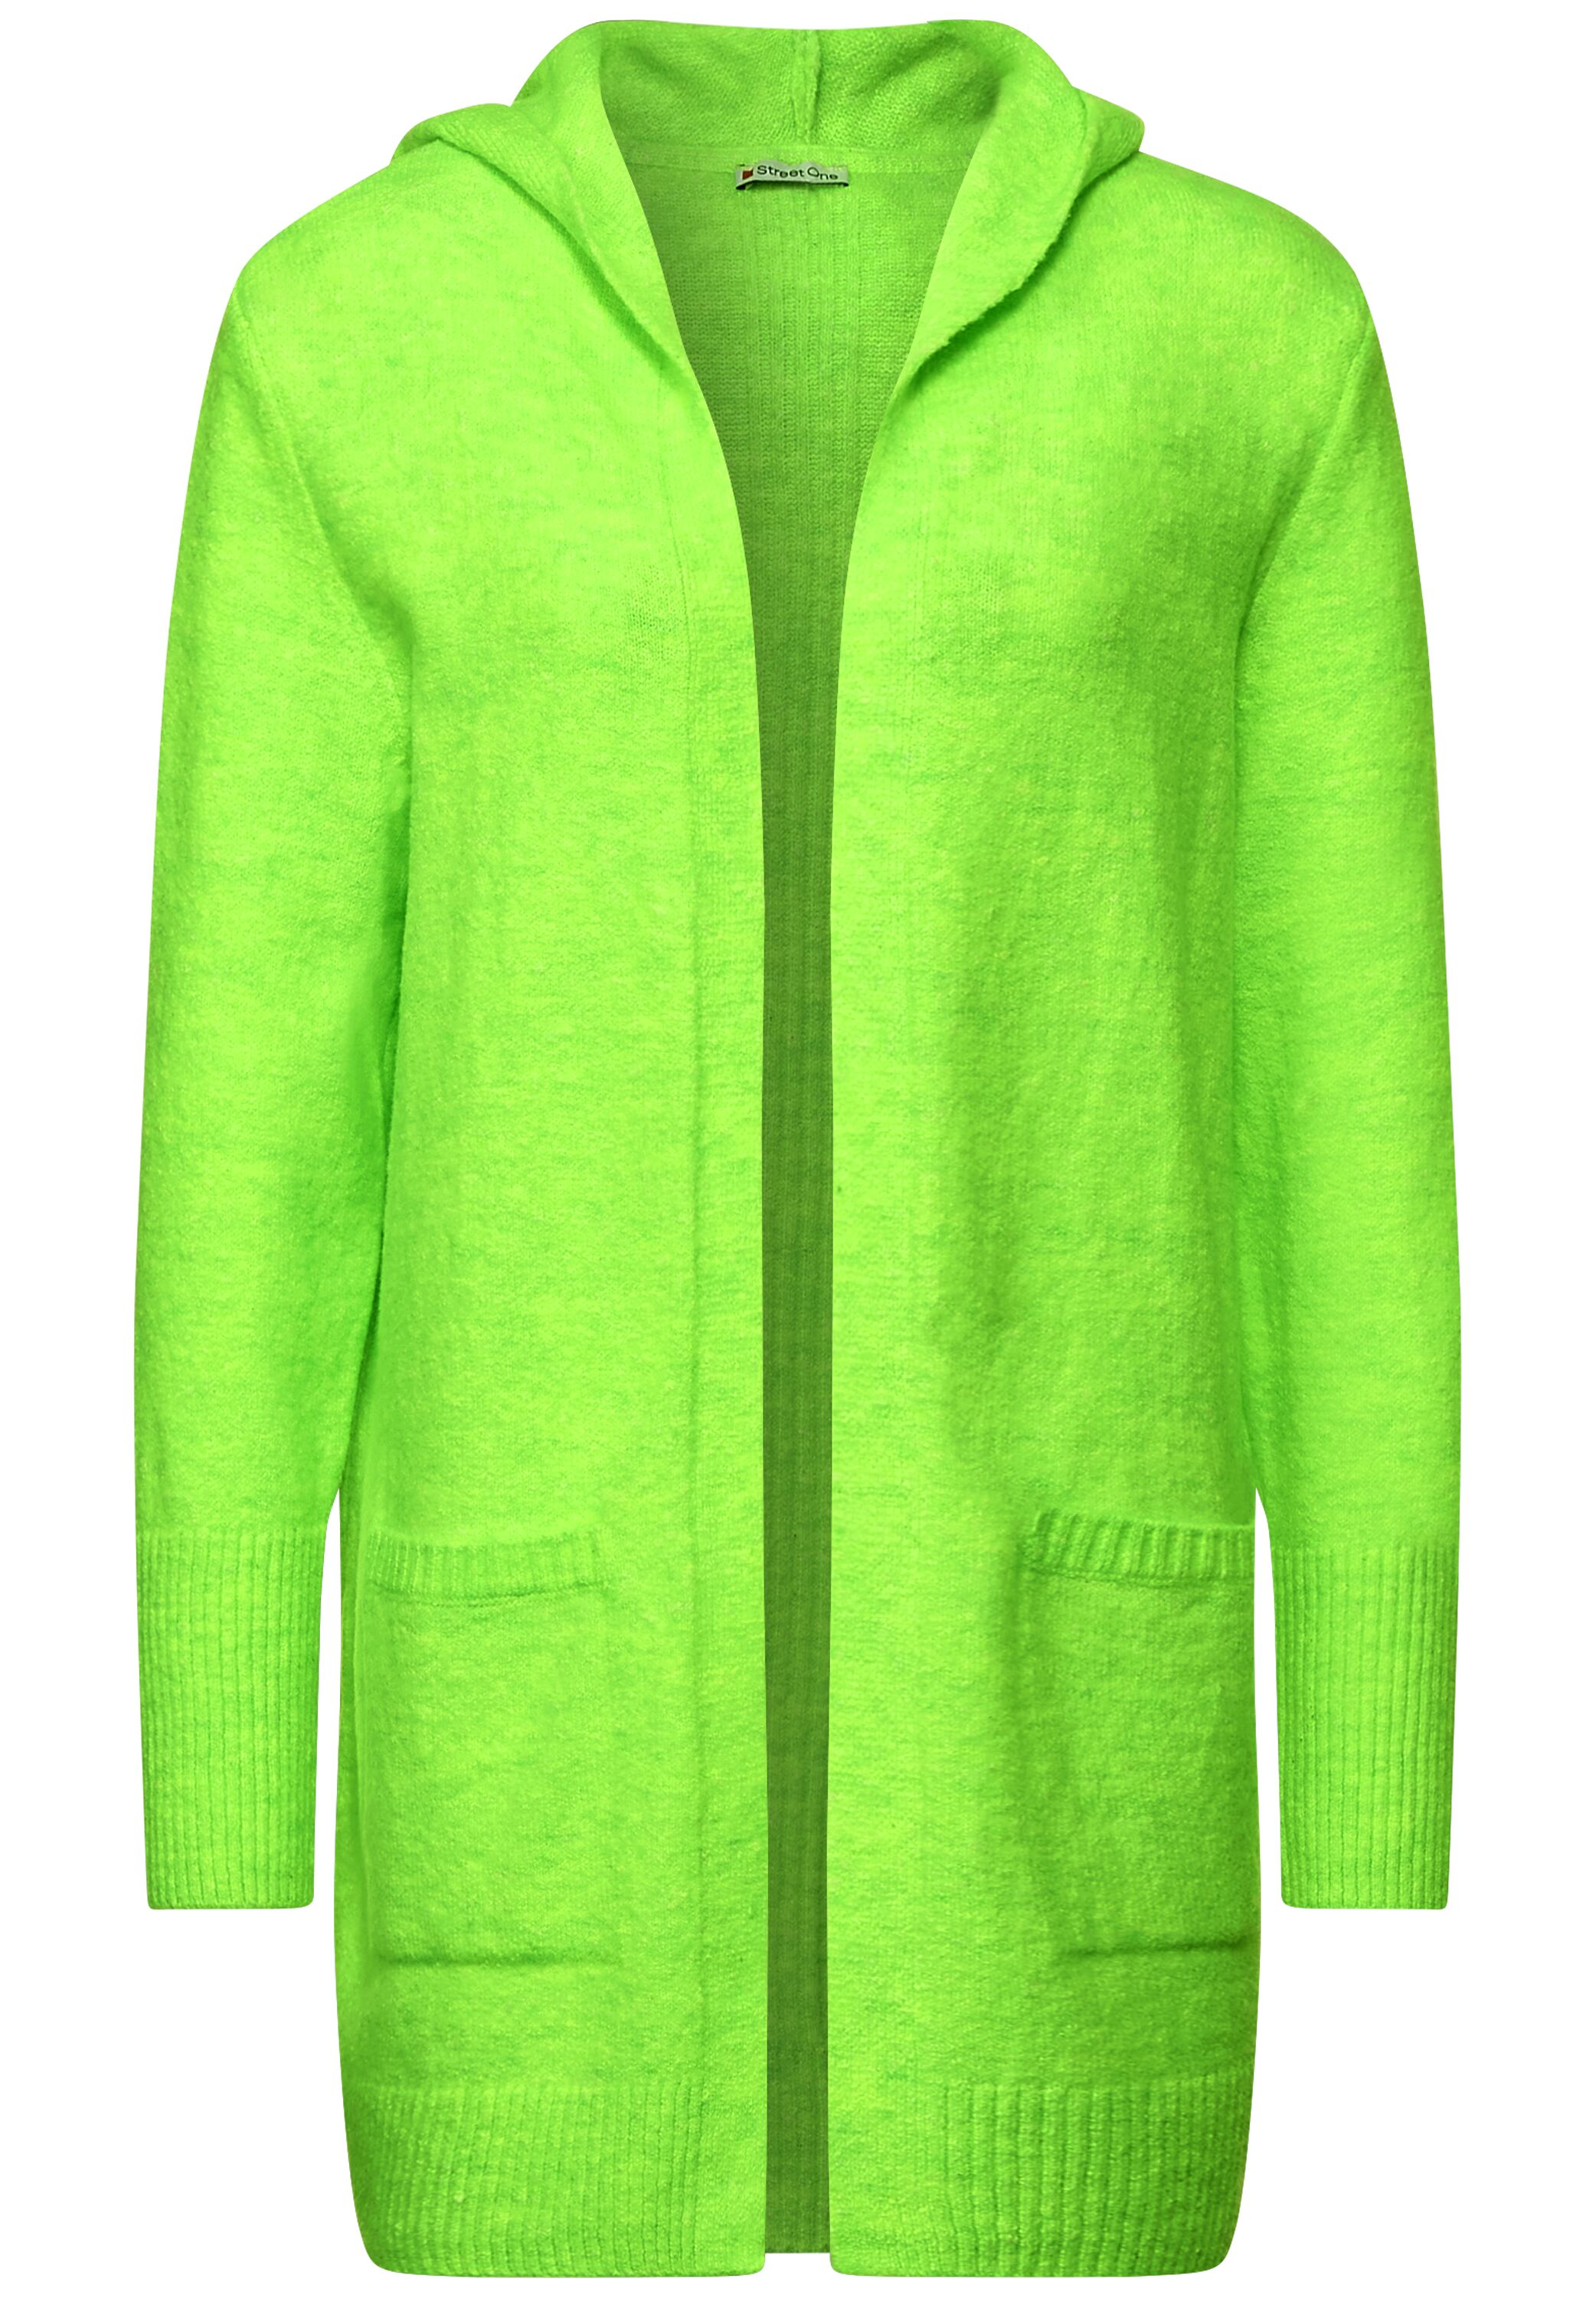 Cardigan im Hoodie Style in Shiny Apple Green Melange von